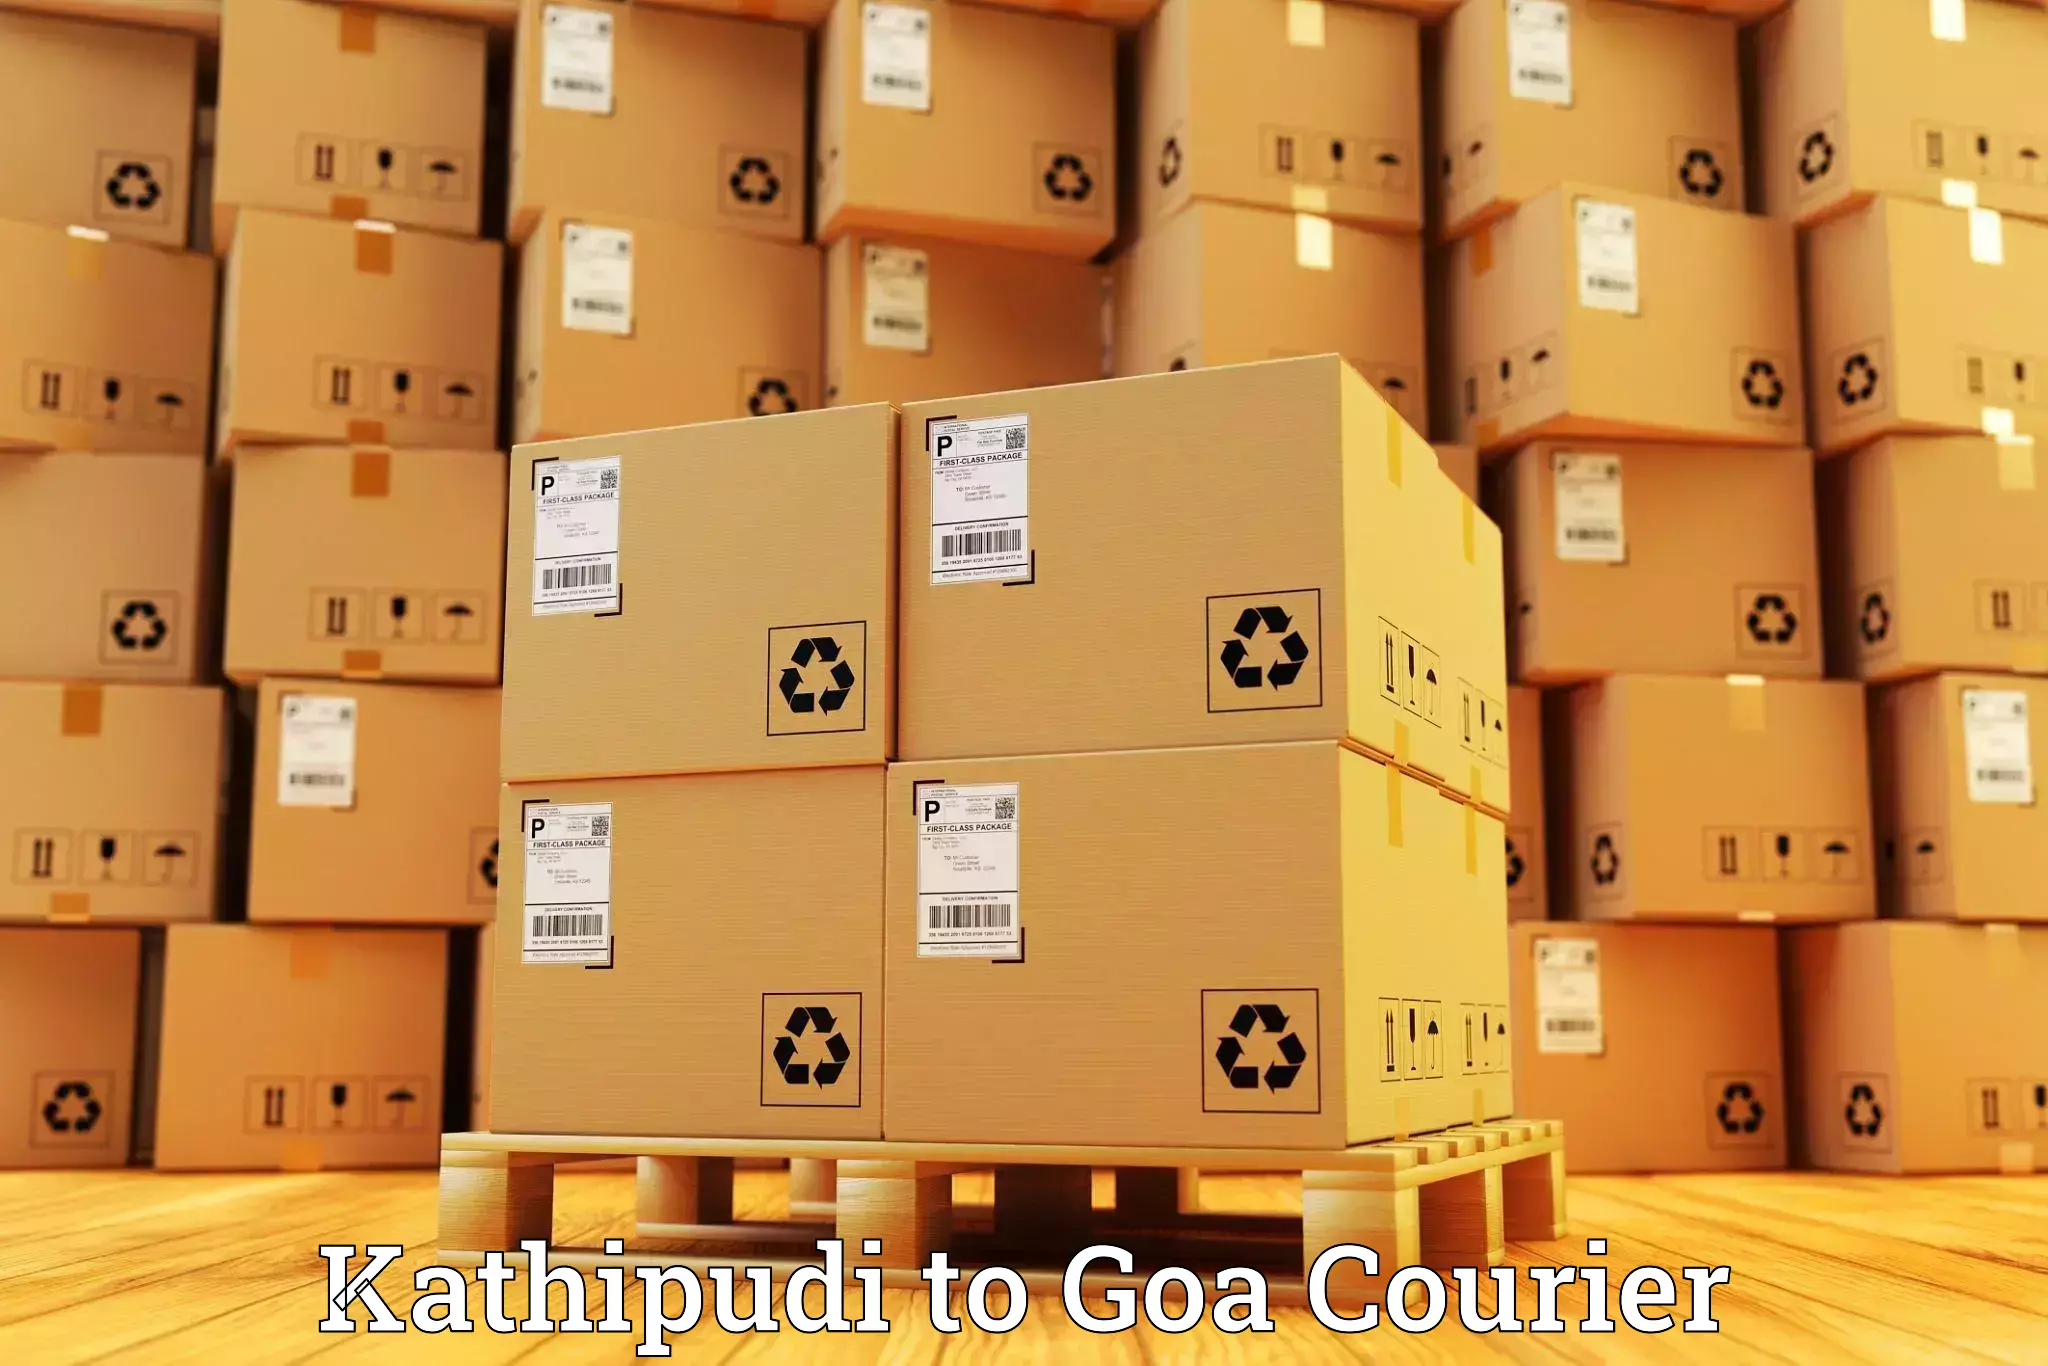 Comprehensive shipping network Kathipudi to IIT Goa